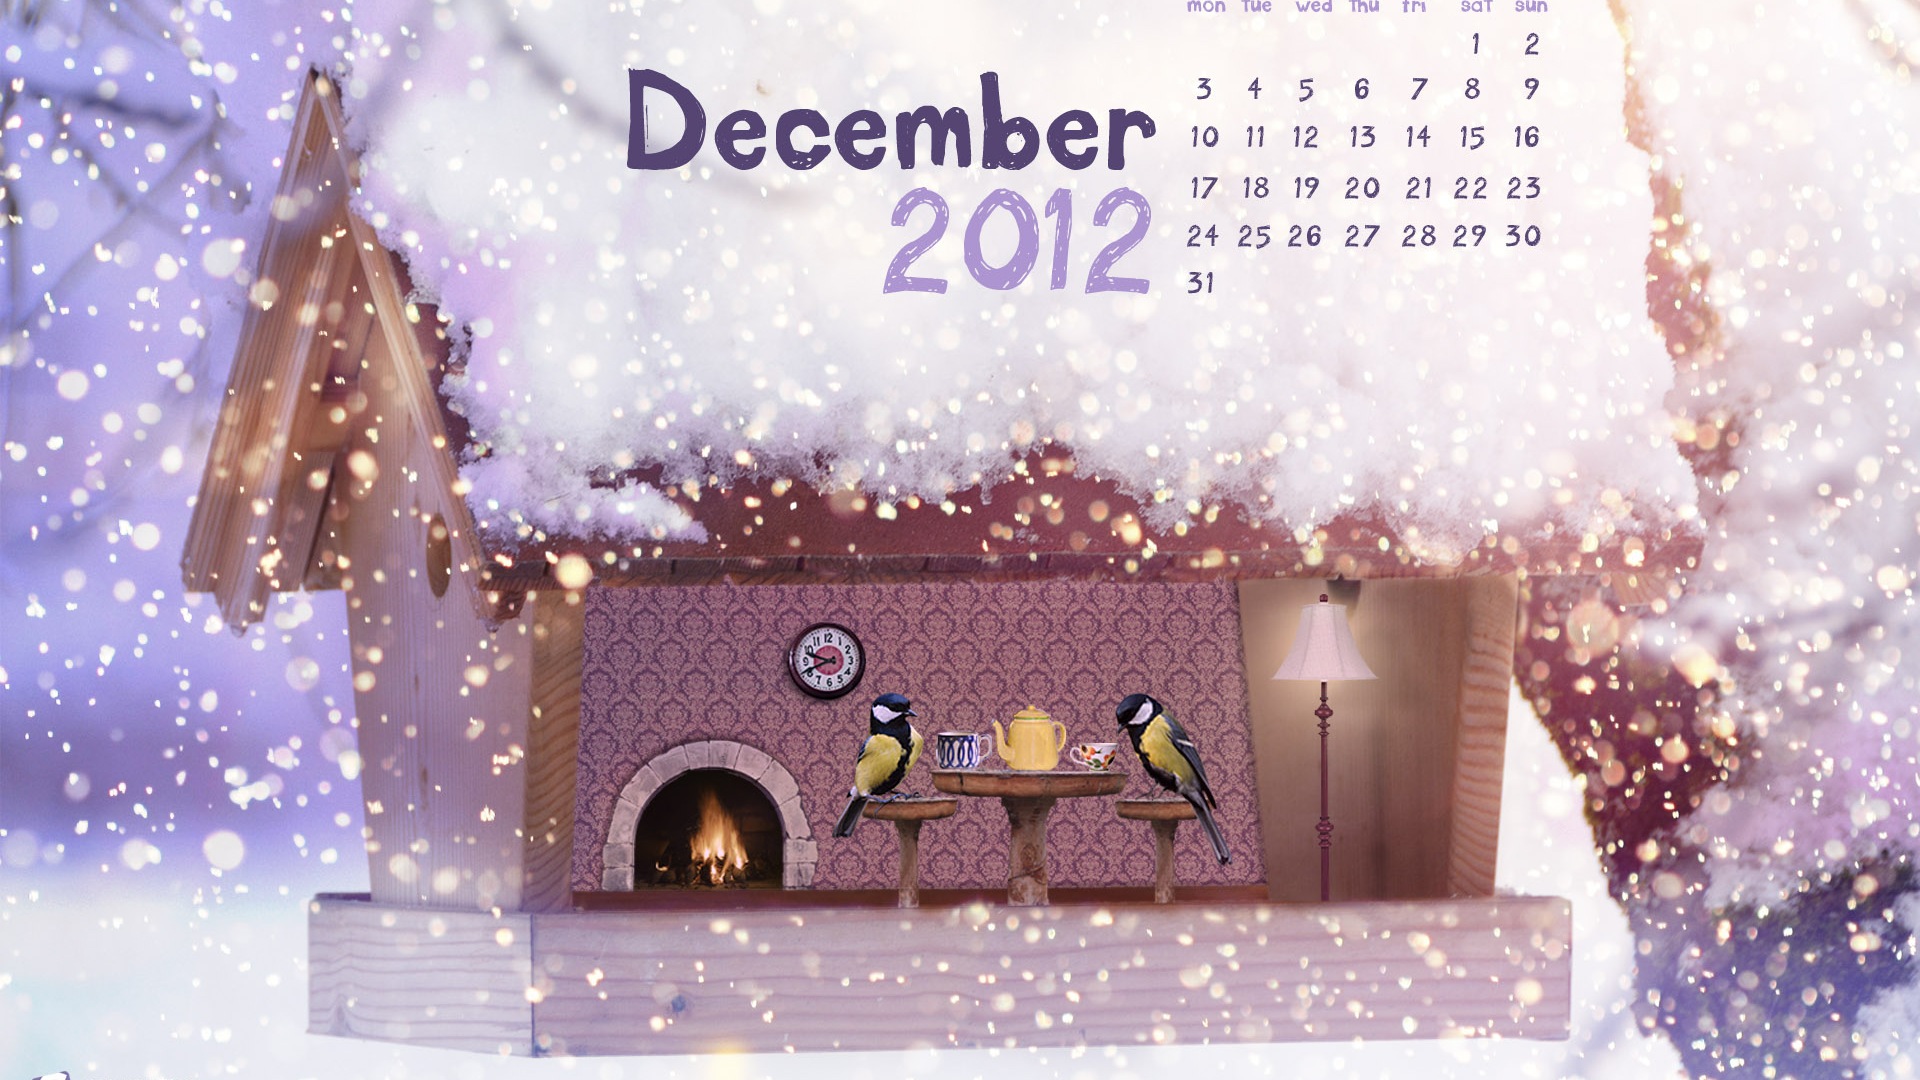 December 2012 Calendar wallpaper (1) #1 - 1920x1080